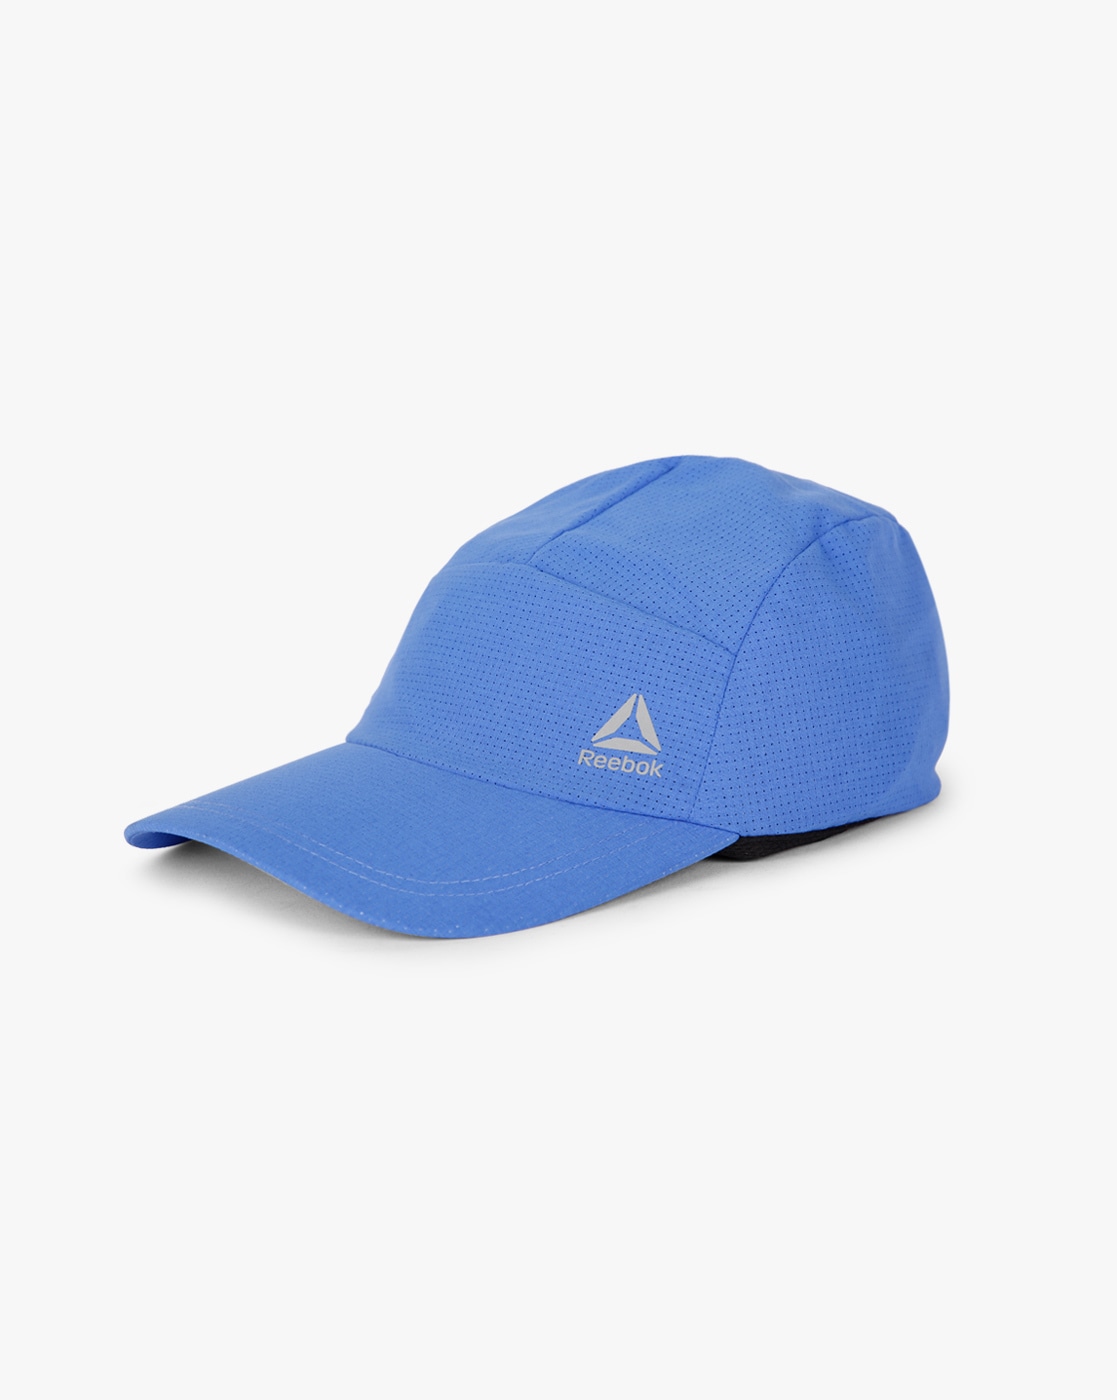 reebok cap blue